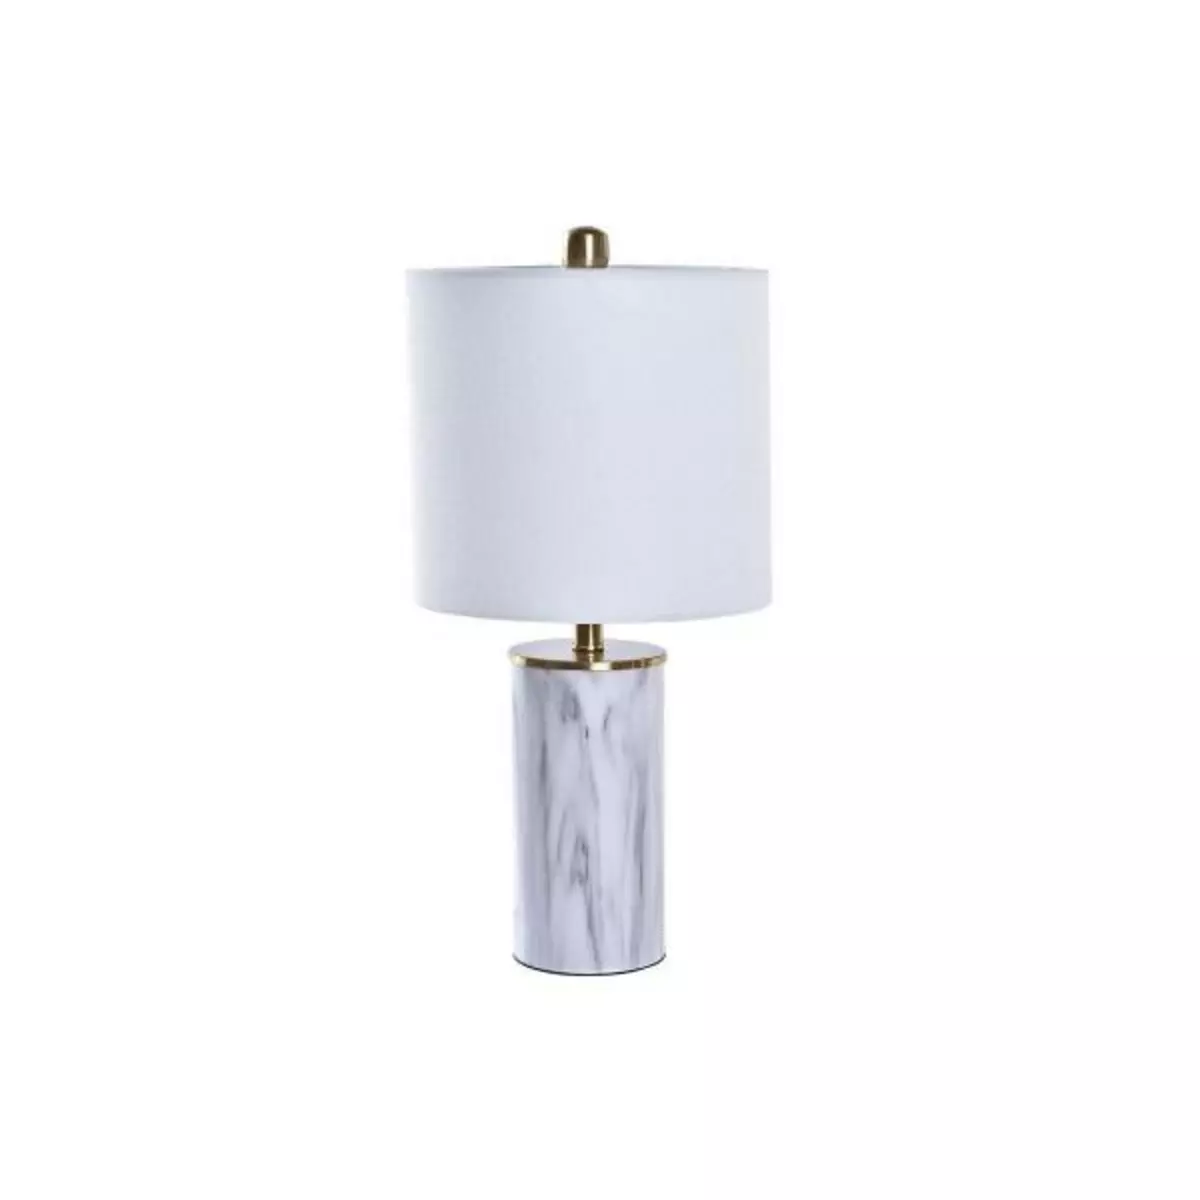 MARKET24 Lampe de bureau DKD Home Decor Doré Blanc 220 V 50 W Moderne (23 x 23 x 47 cm)